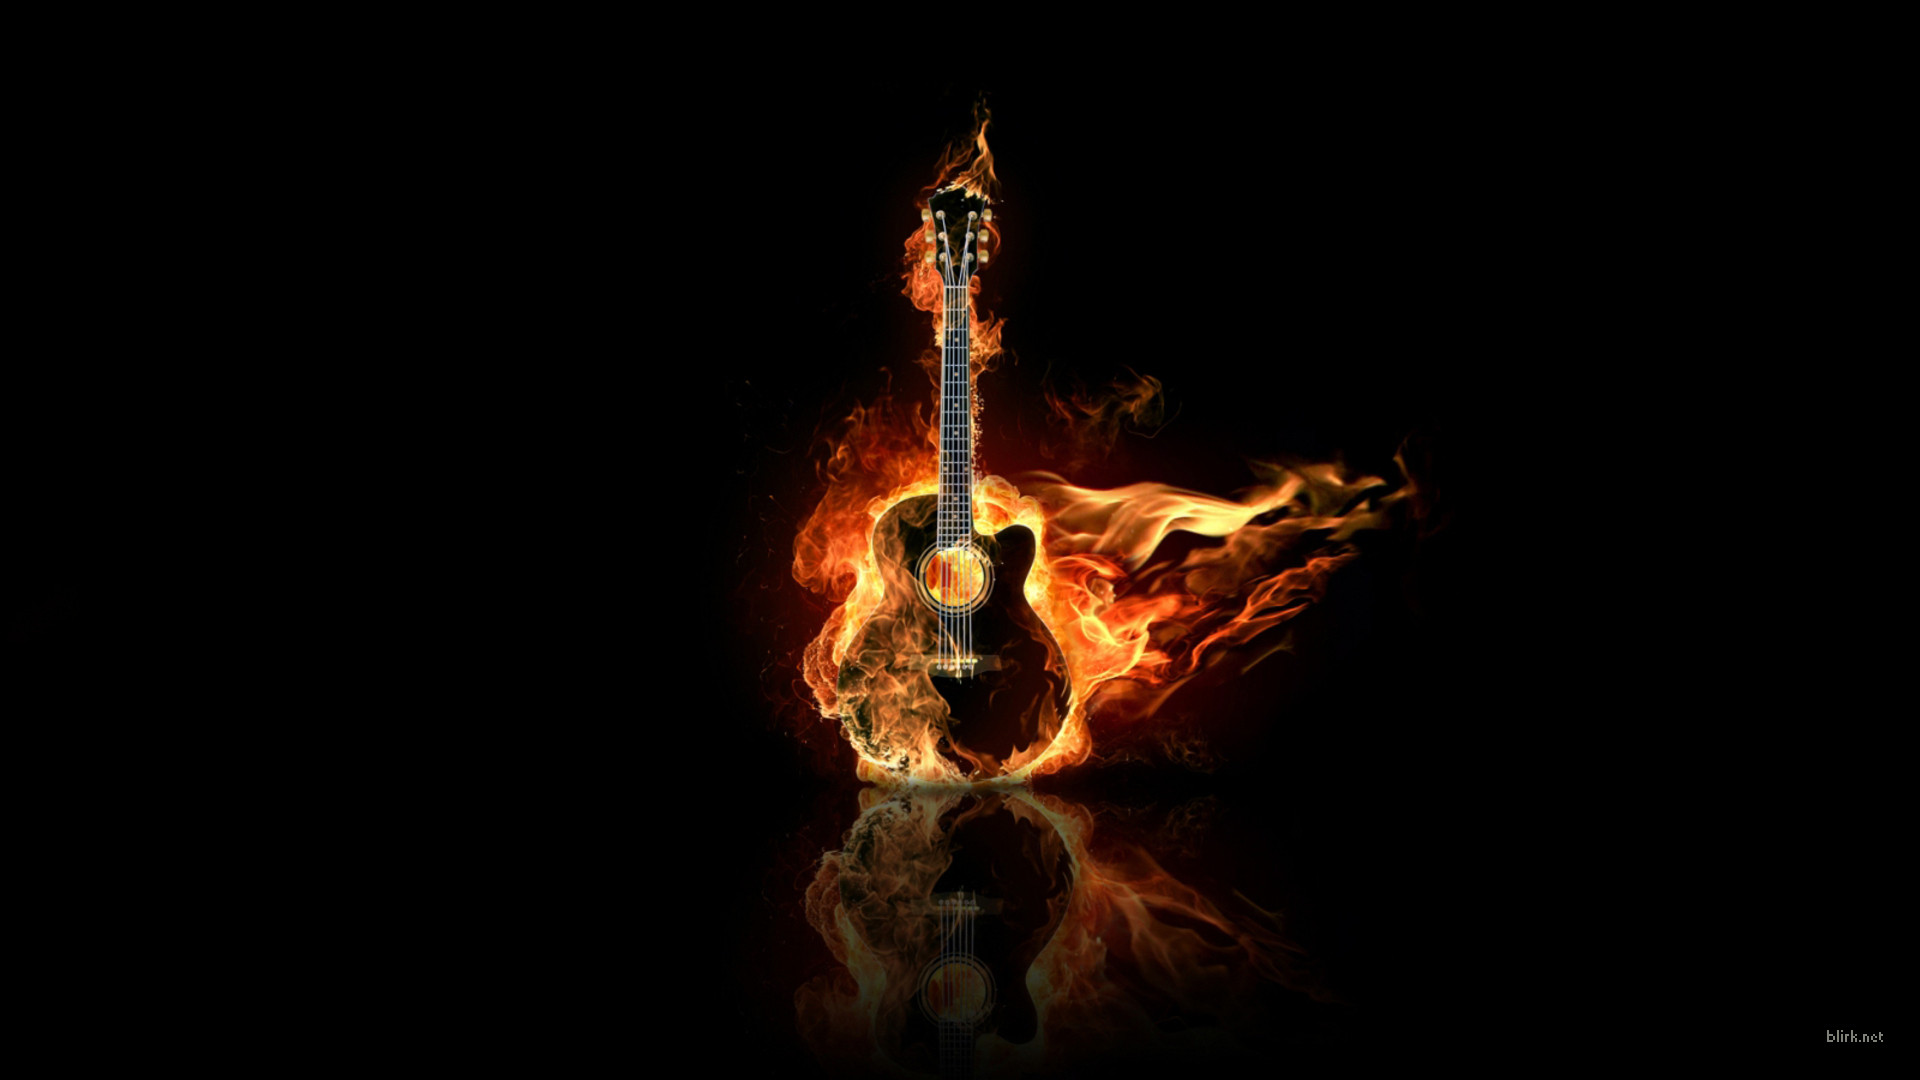 Guitar on fire wallpaper